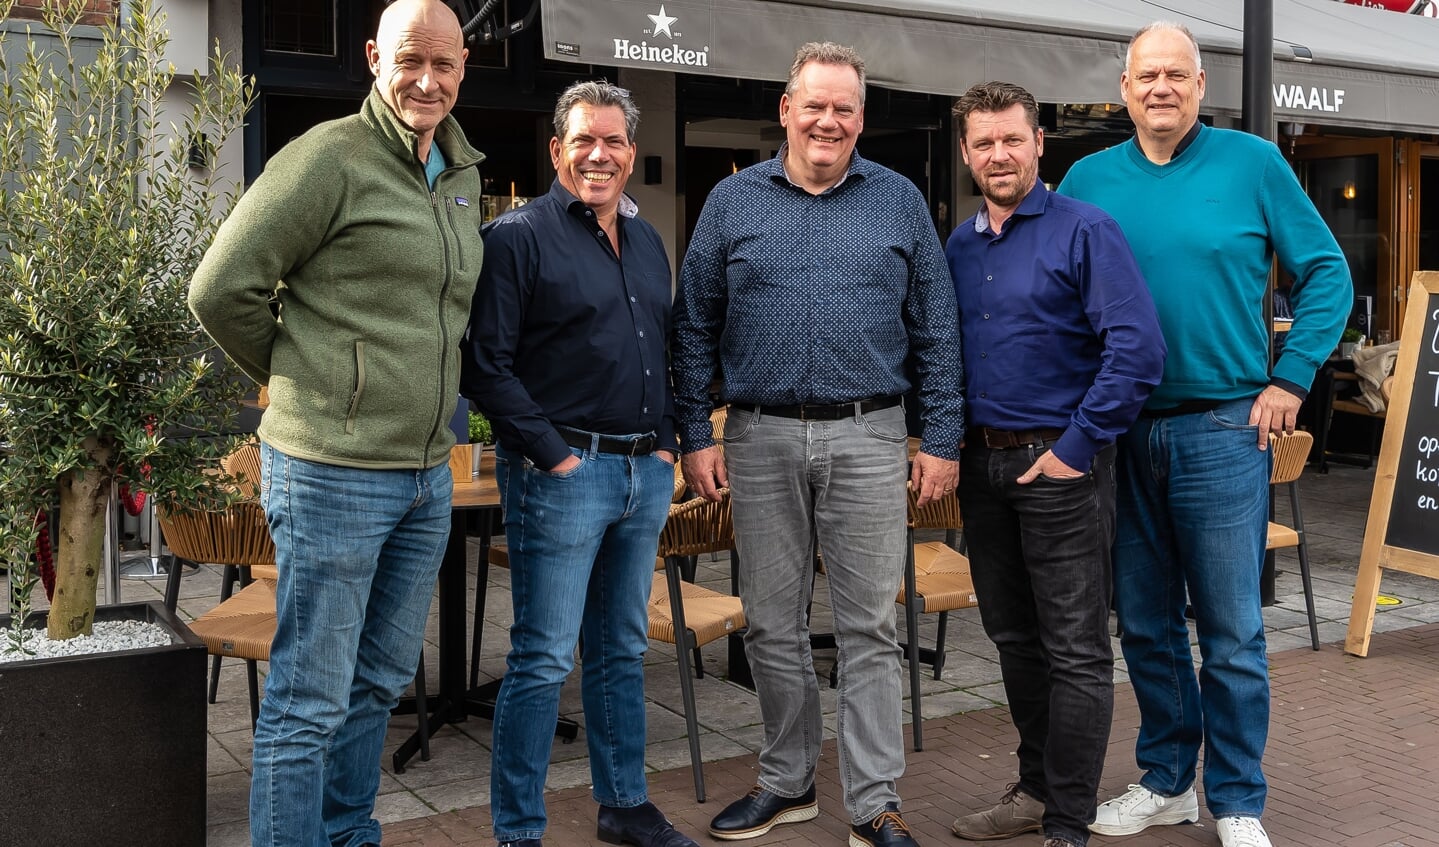 Het bestuur heeft er zin in. Van links naar rechts Gertjan Otto, Jan Peter Dompeling, Robert Kuiper, Bas Hillecamp en Marco Kuiper. "Alles doen we in de gedachten van Jan." 